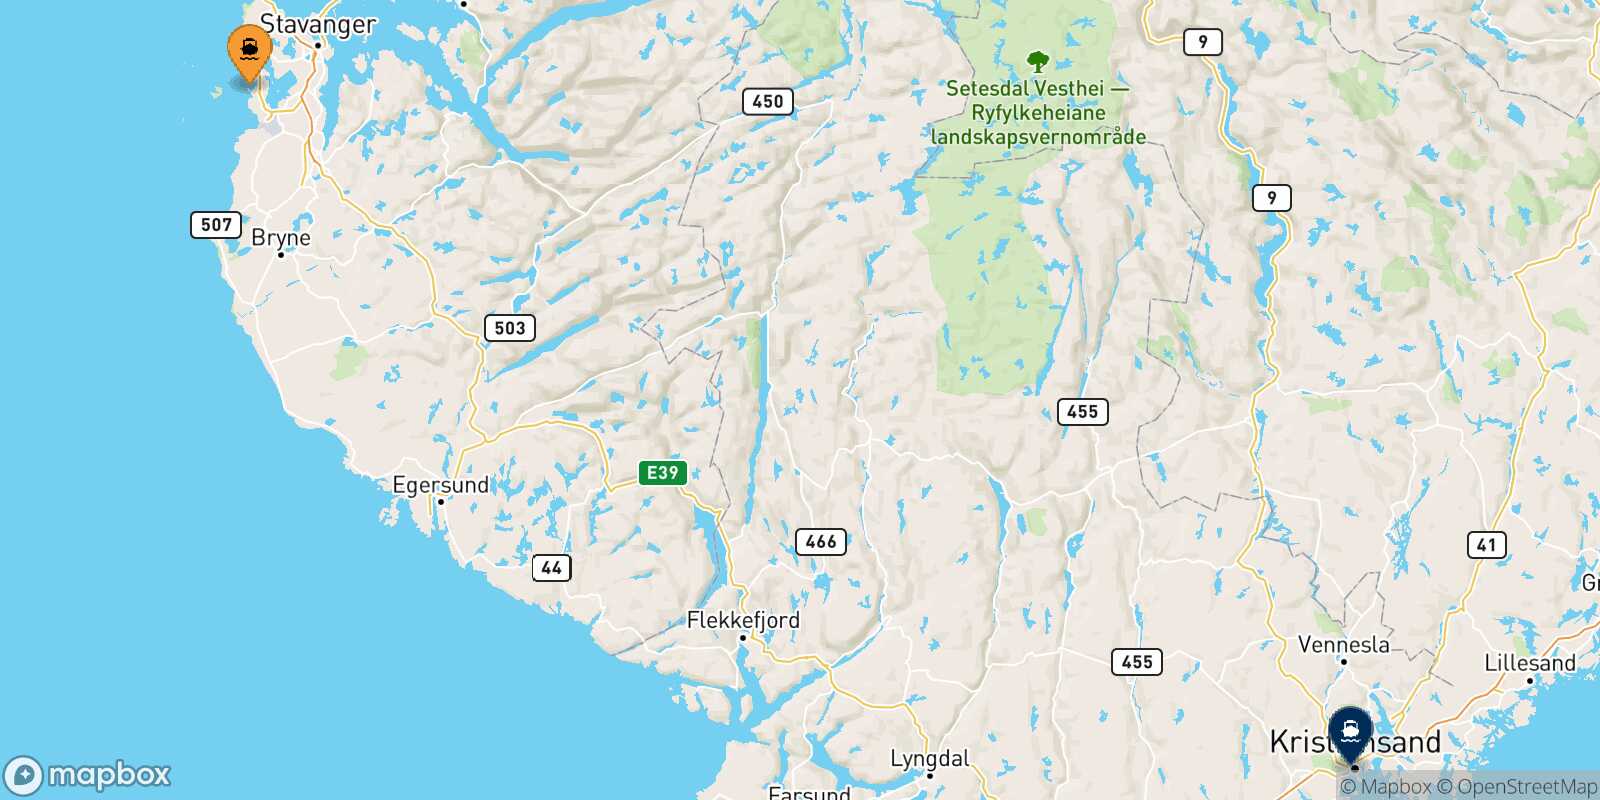 Stavanger Kristiansand route map